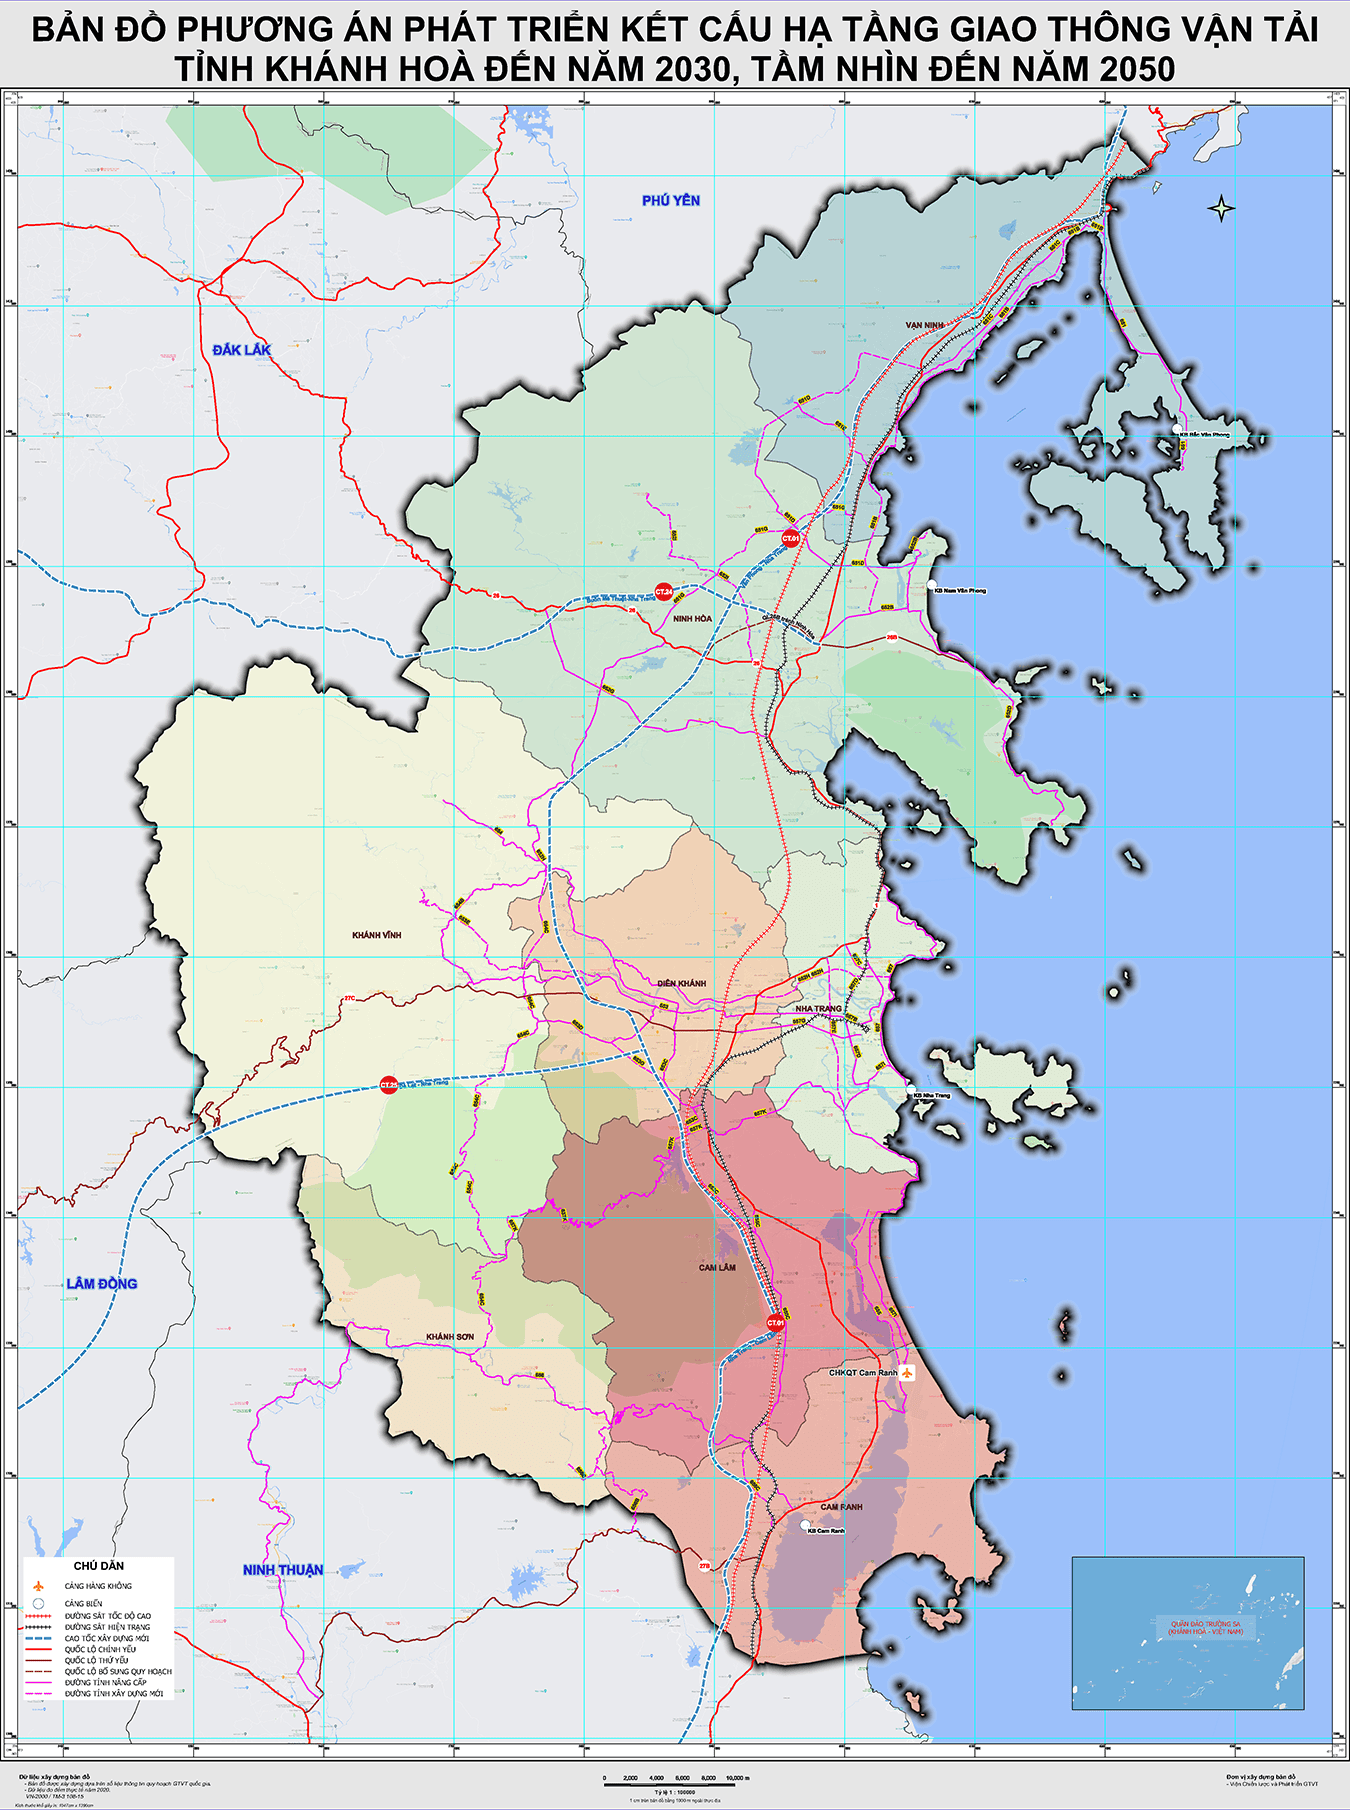 Thông tin quy hoạch giao thông tỉnh Khánh Hòa đến năm 2030